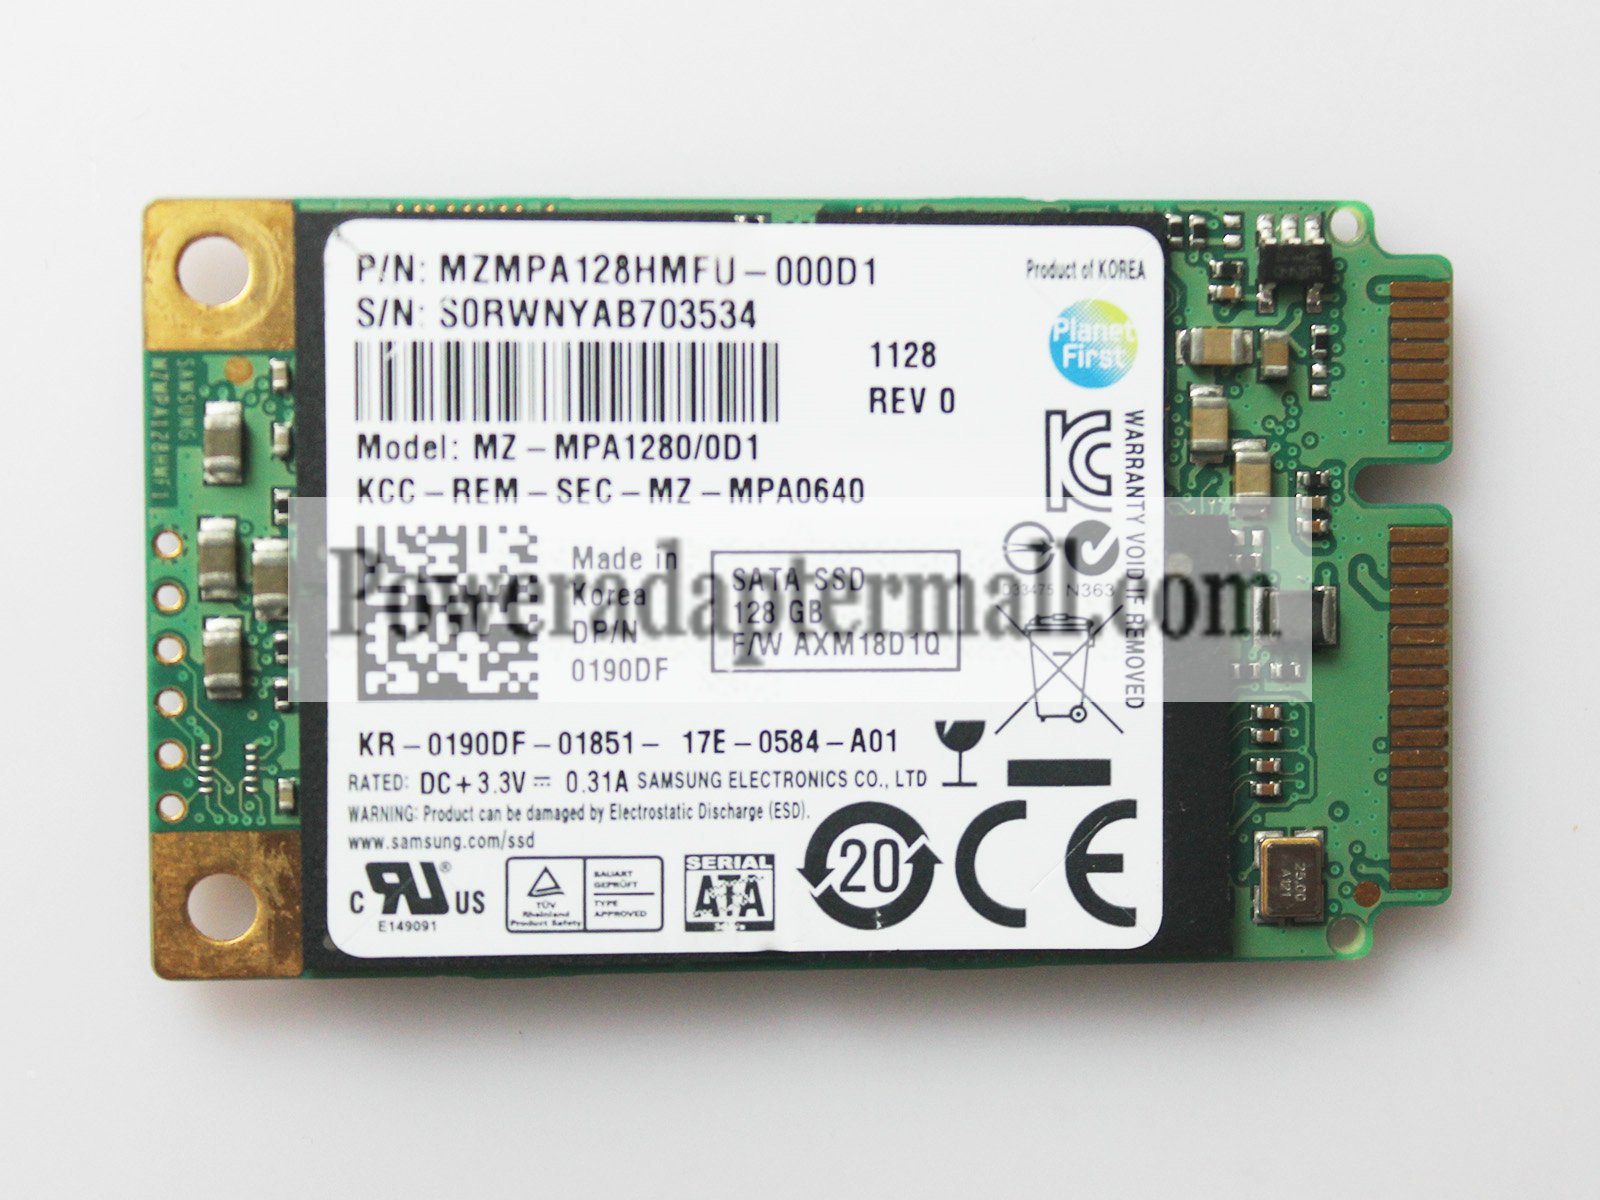 128GB Samsung MZMPA128HMFU-000D1 SSD MSATA Solid State Drive